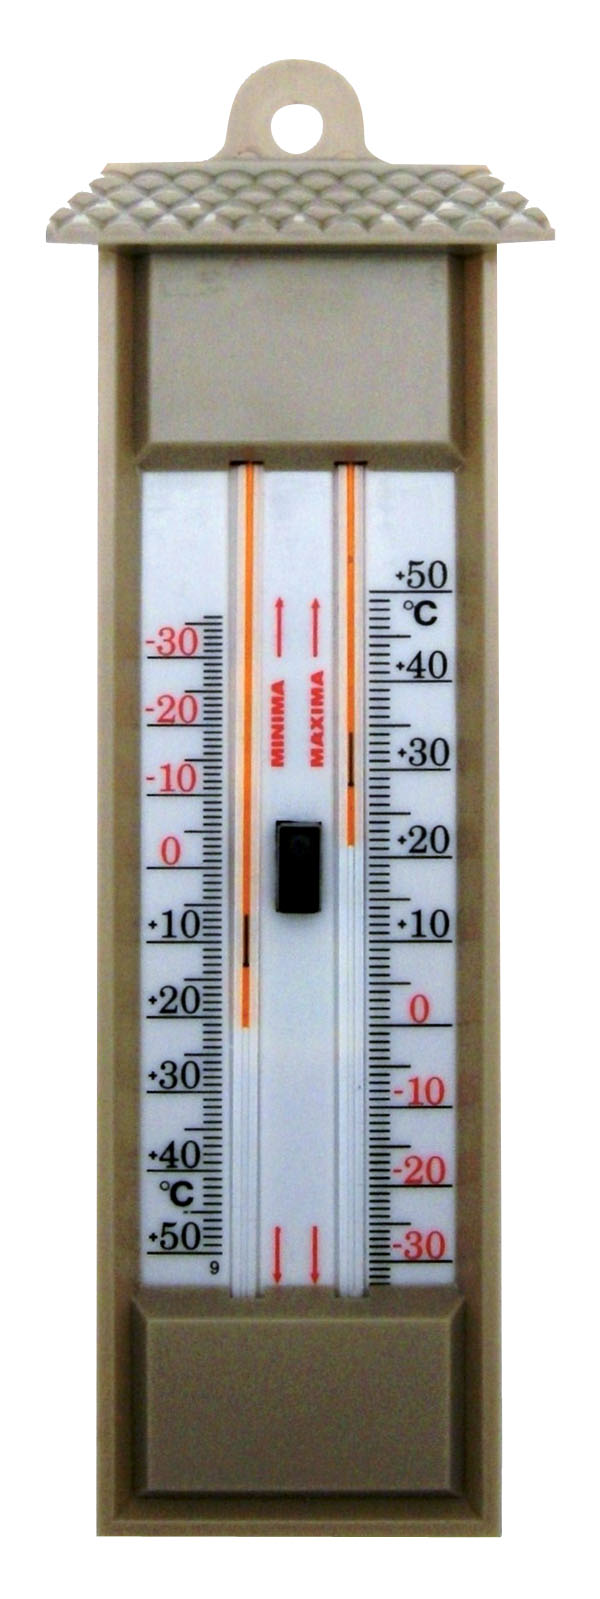 Le thermomètre avec mercure ou sans mercure –